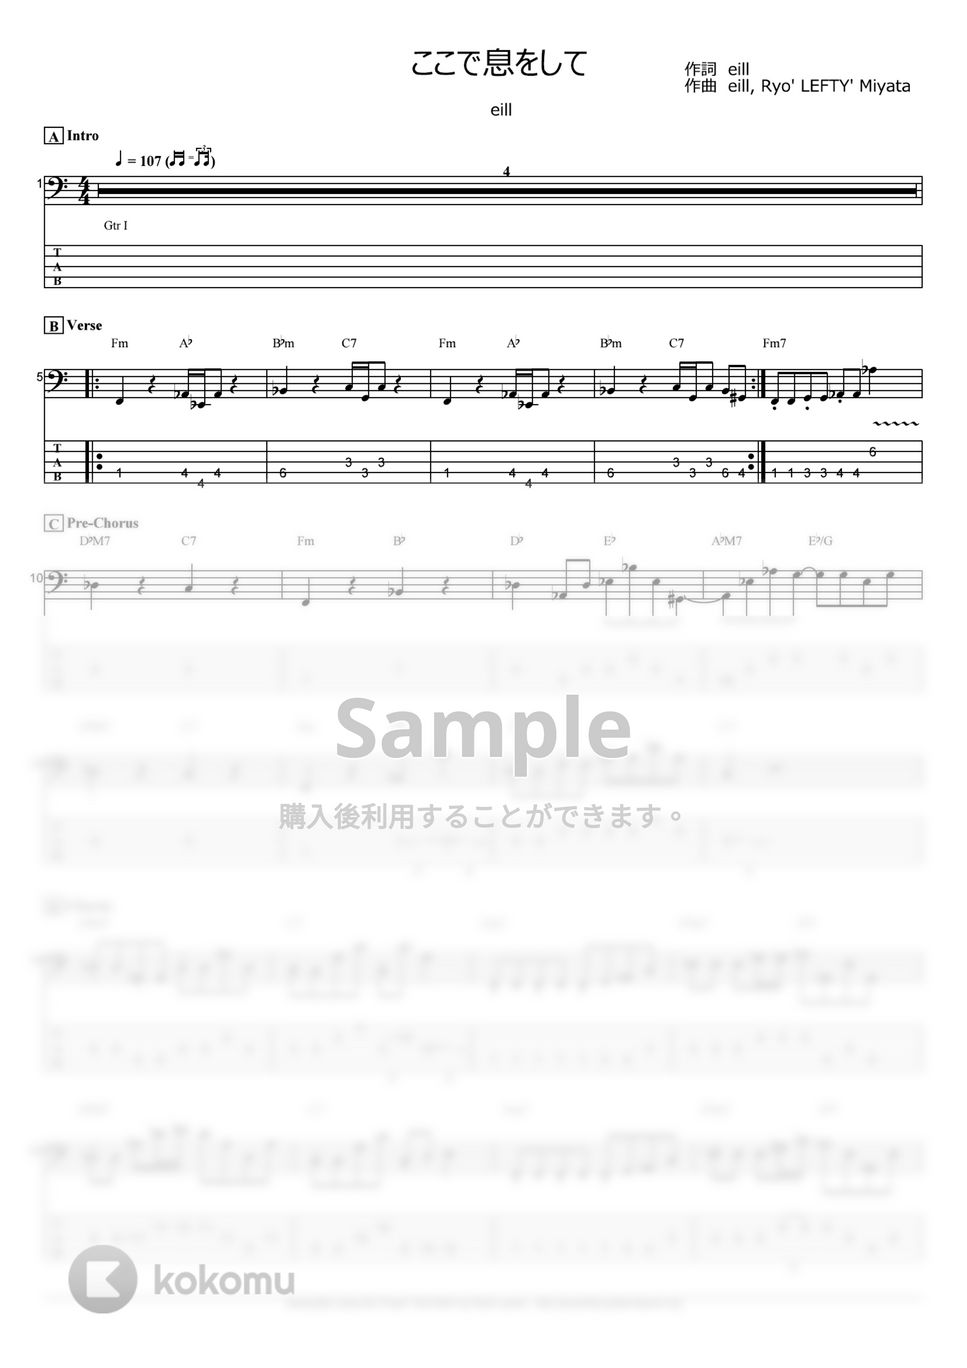 東京リベンジャーズ - ここで息をして (ベース Tab譜 5弦) by T's bass score